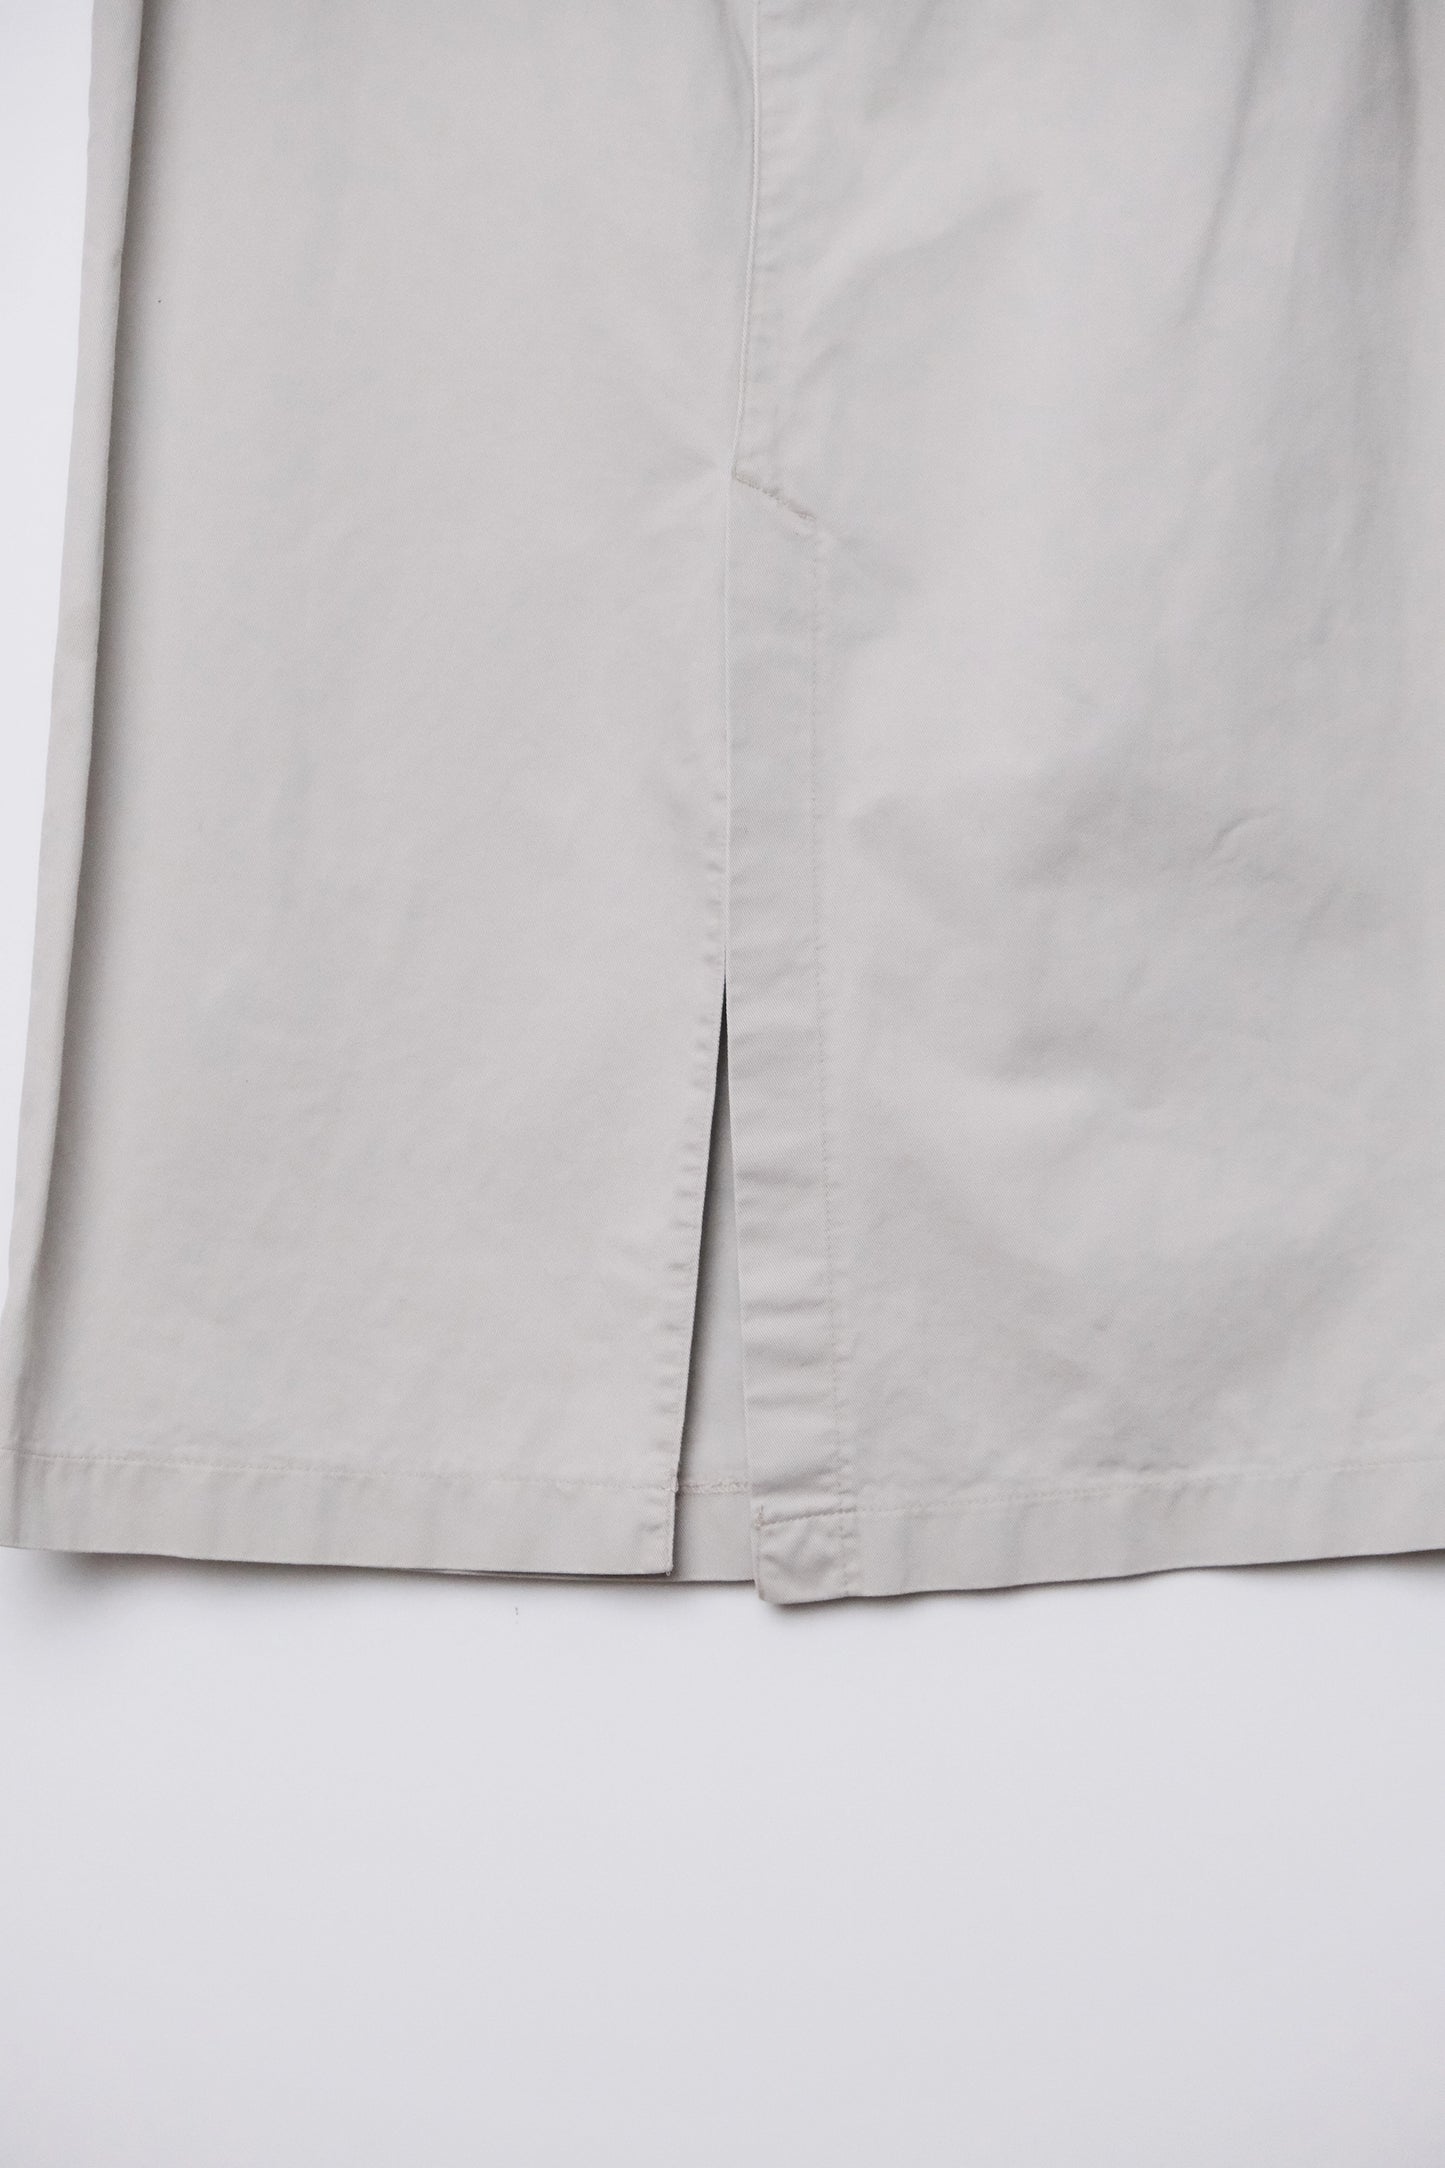 Lee Khaki Cotton Maxi Skirt US 10, 90's